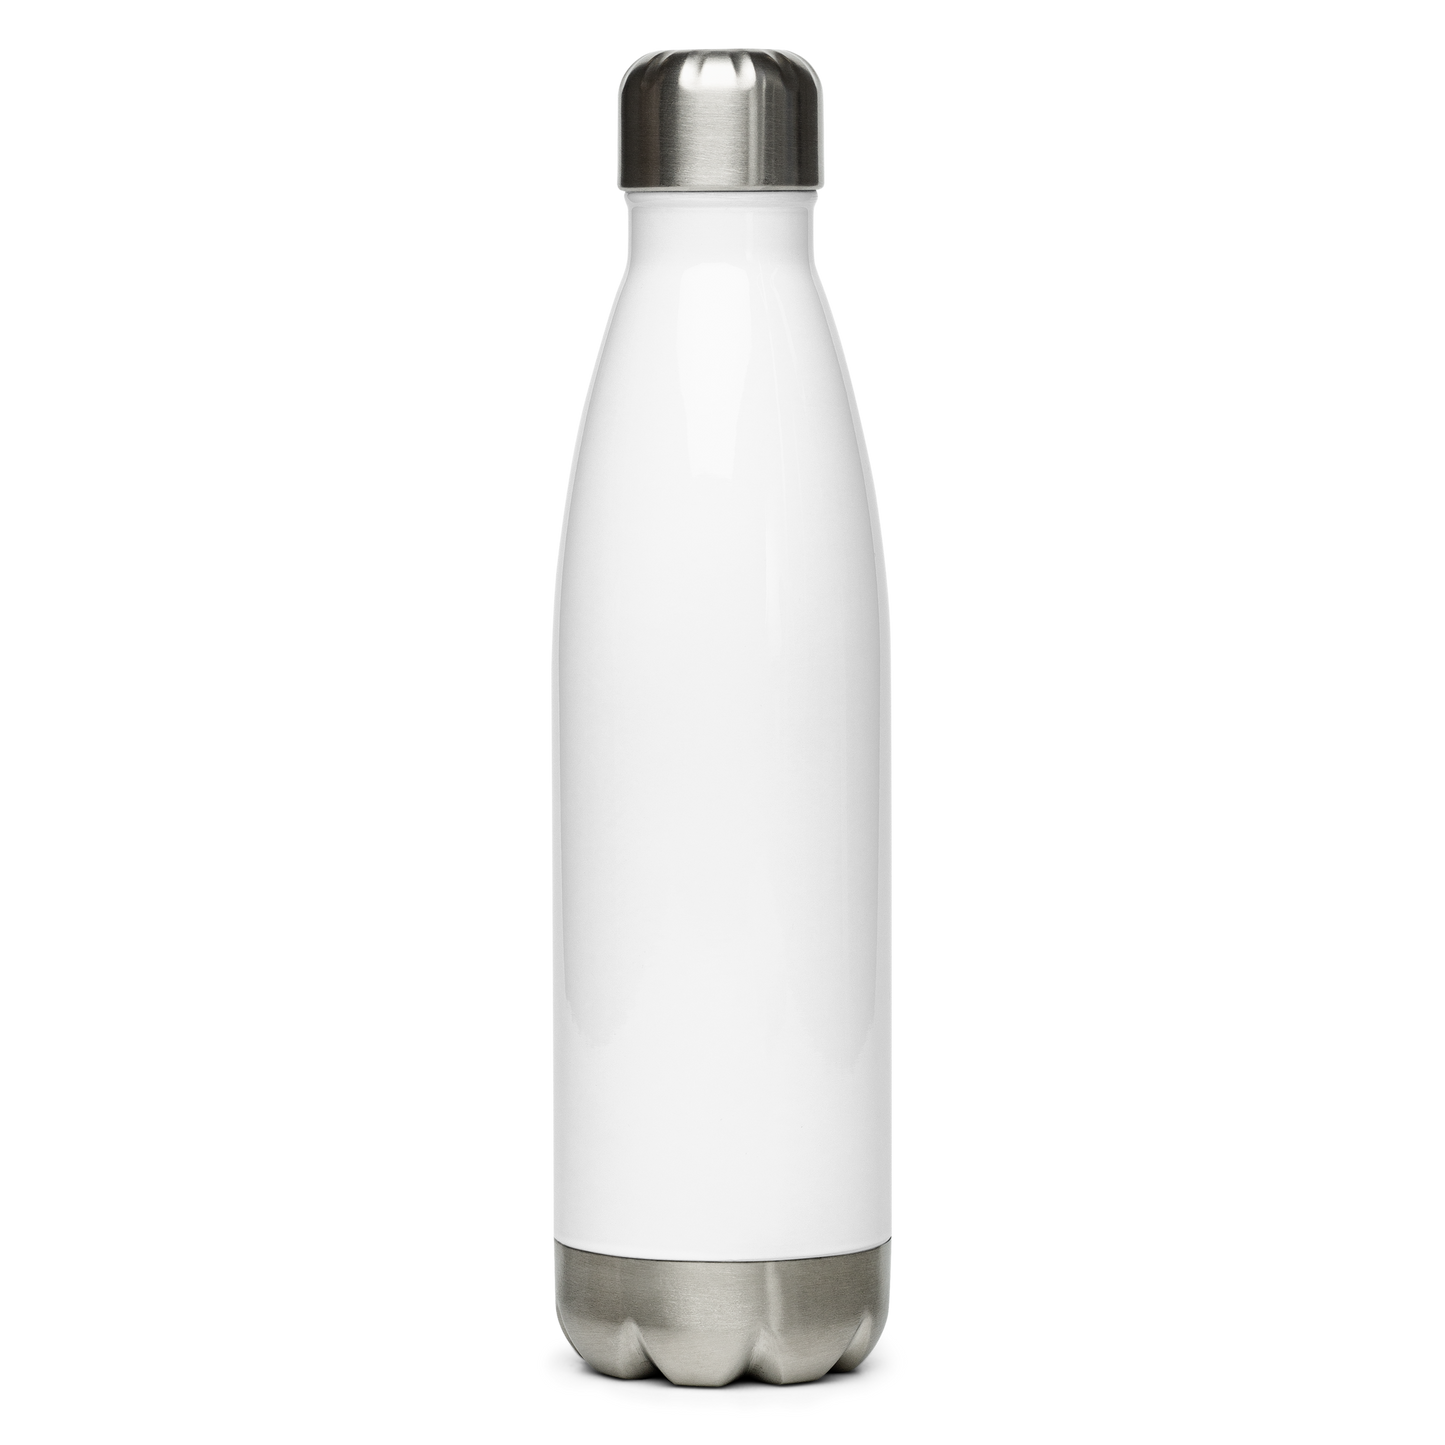 Freeze Warning Stainless Steel Water Bottle